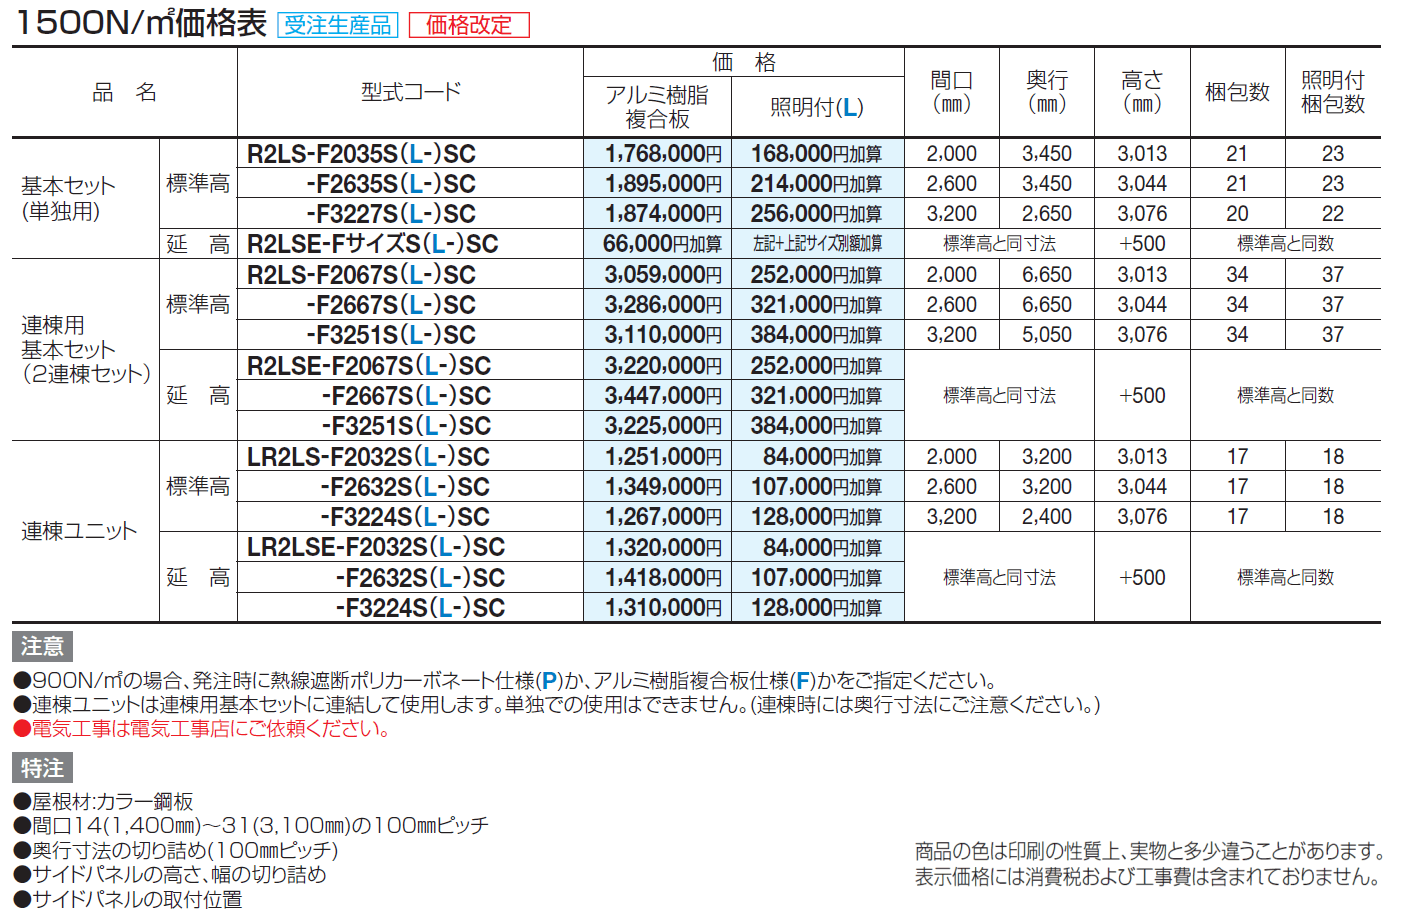 ライズルーフⅡ Lタイプ サイドパネル付(1500N/㎡)_価格_2